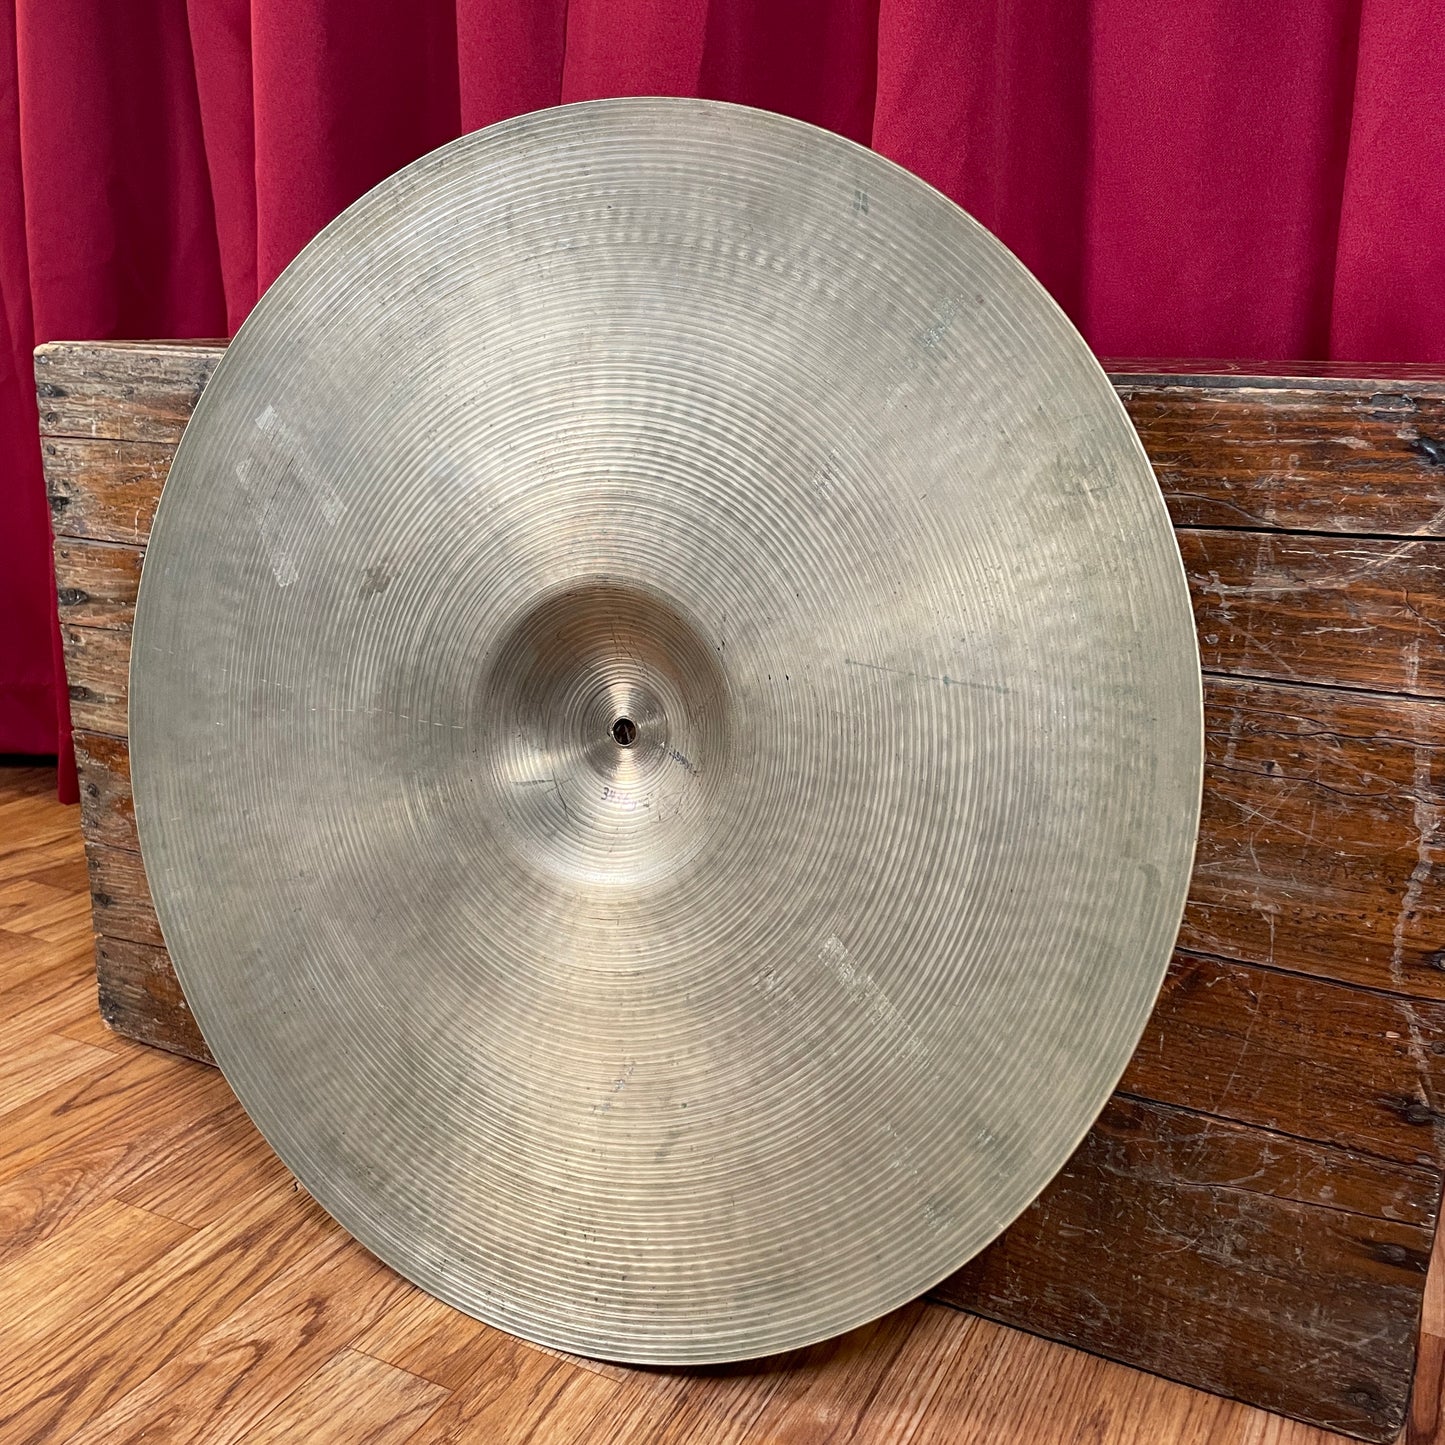 22" Zildjian A 1960s Ride Cymbal 3436g *Video Demo*